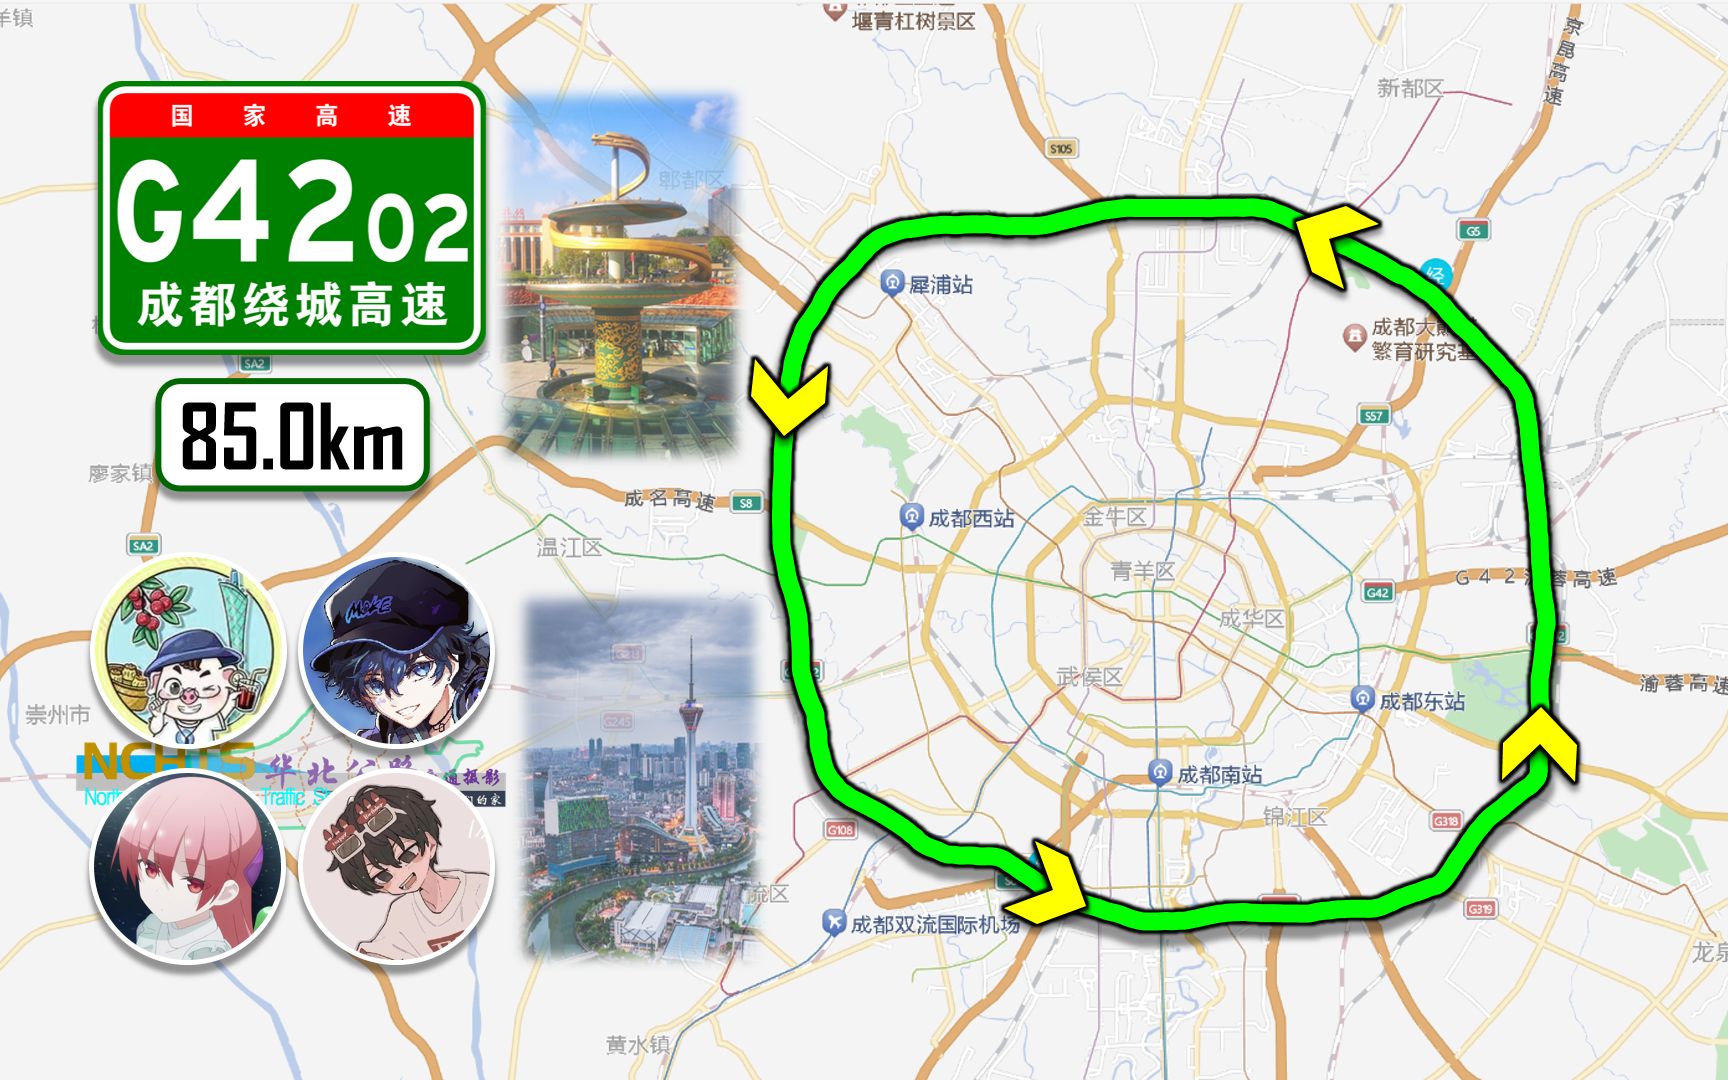 【85km·四环路环绕蓉城成都】g4202成都绕城高速(全程)(狮子立交